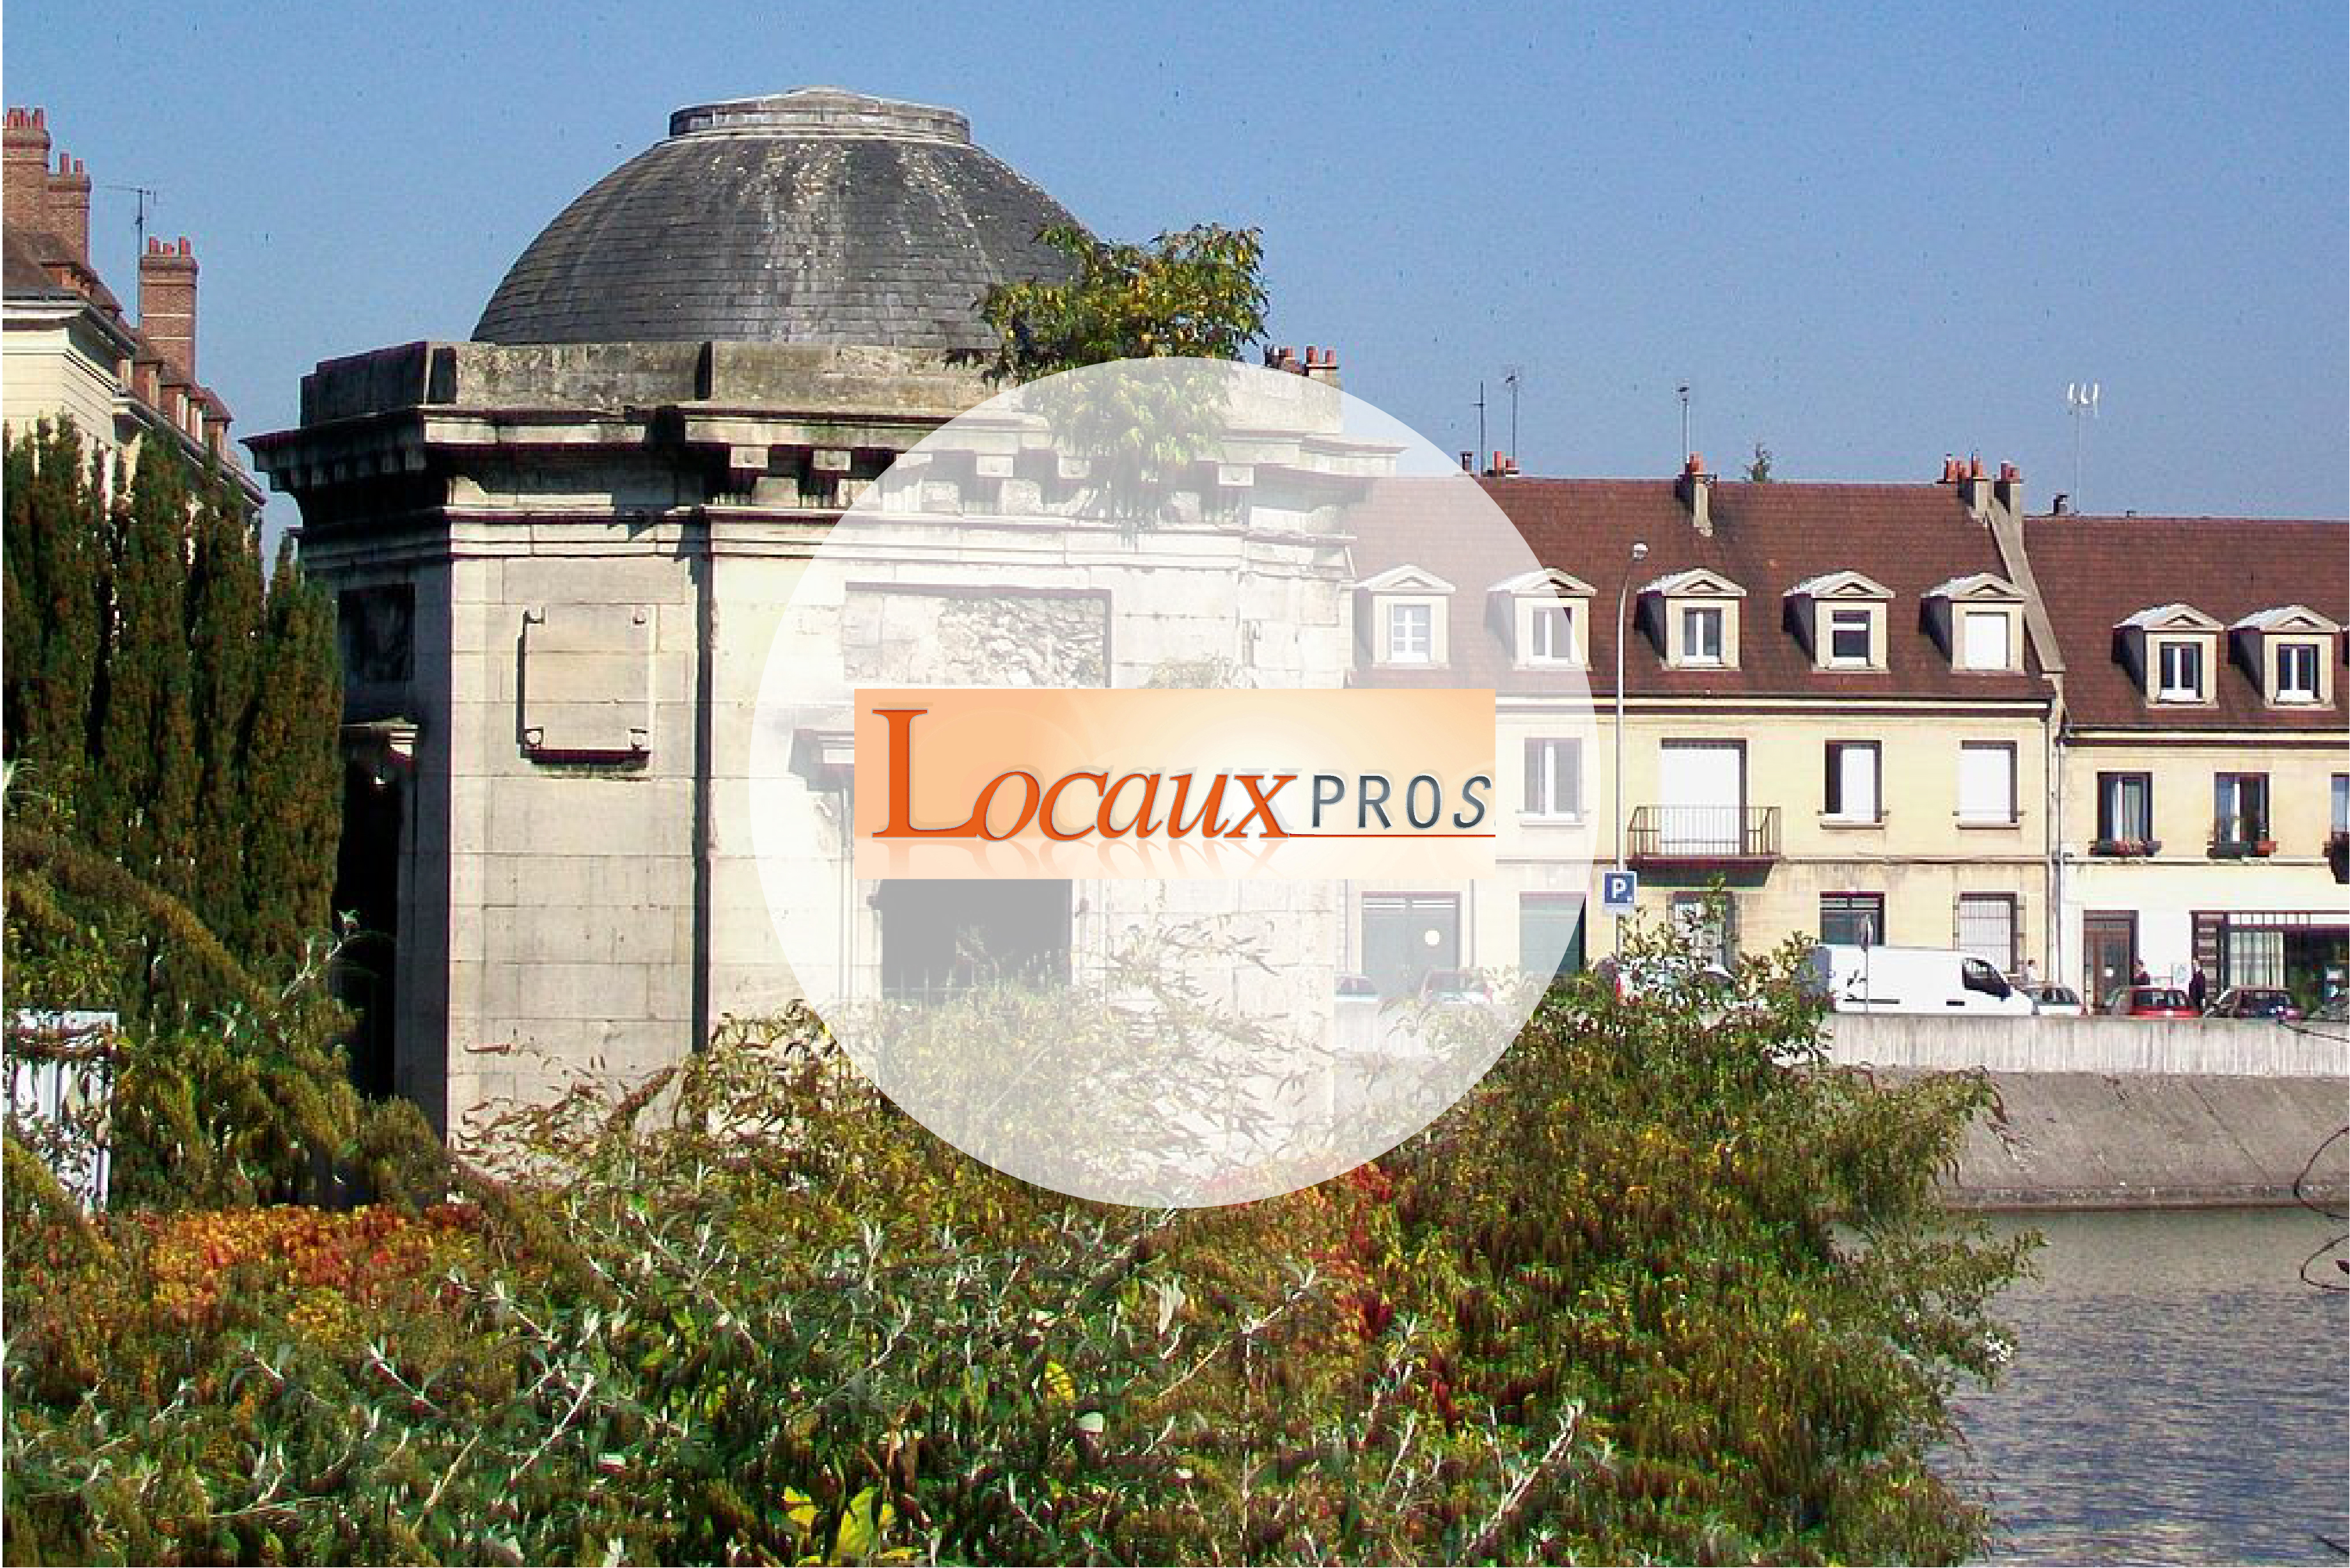 LocauxPros